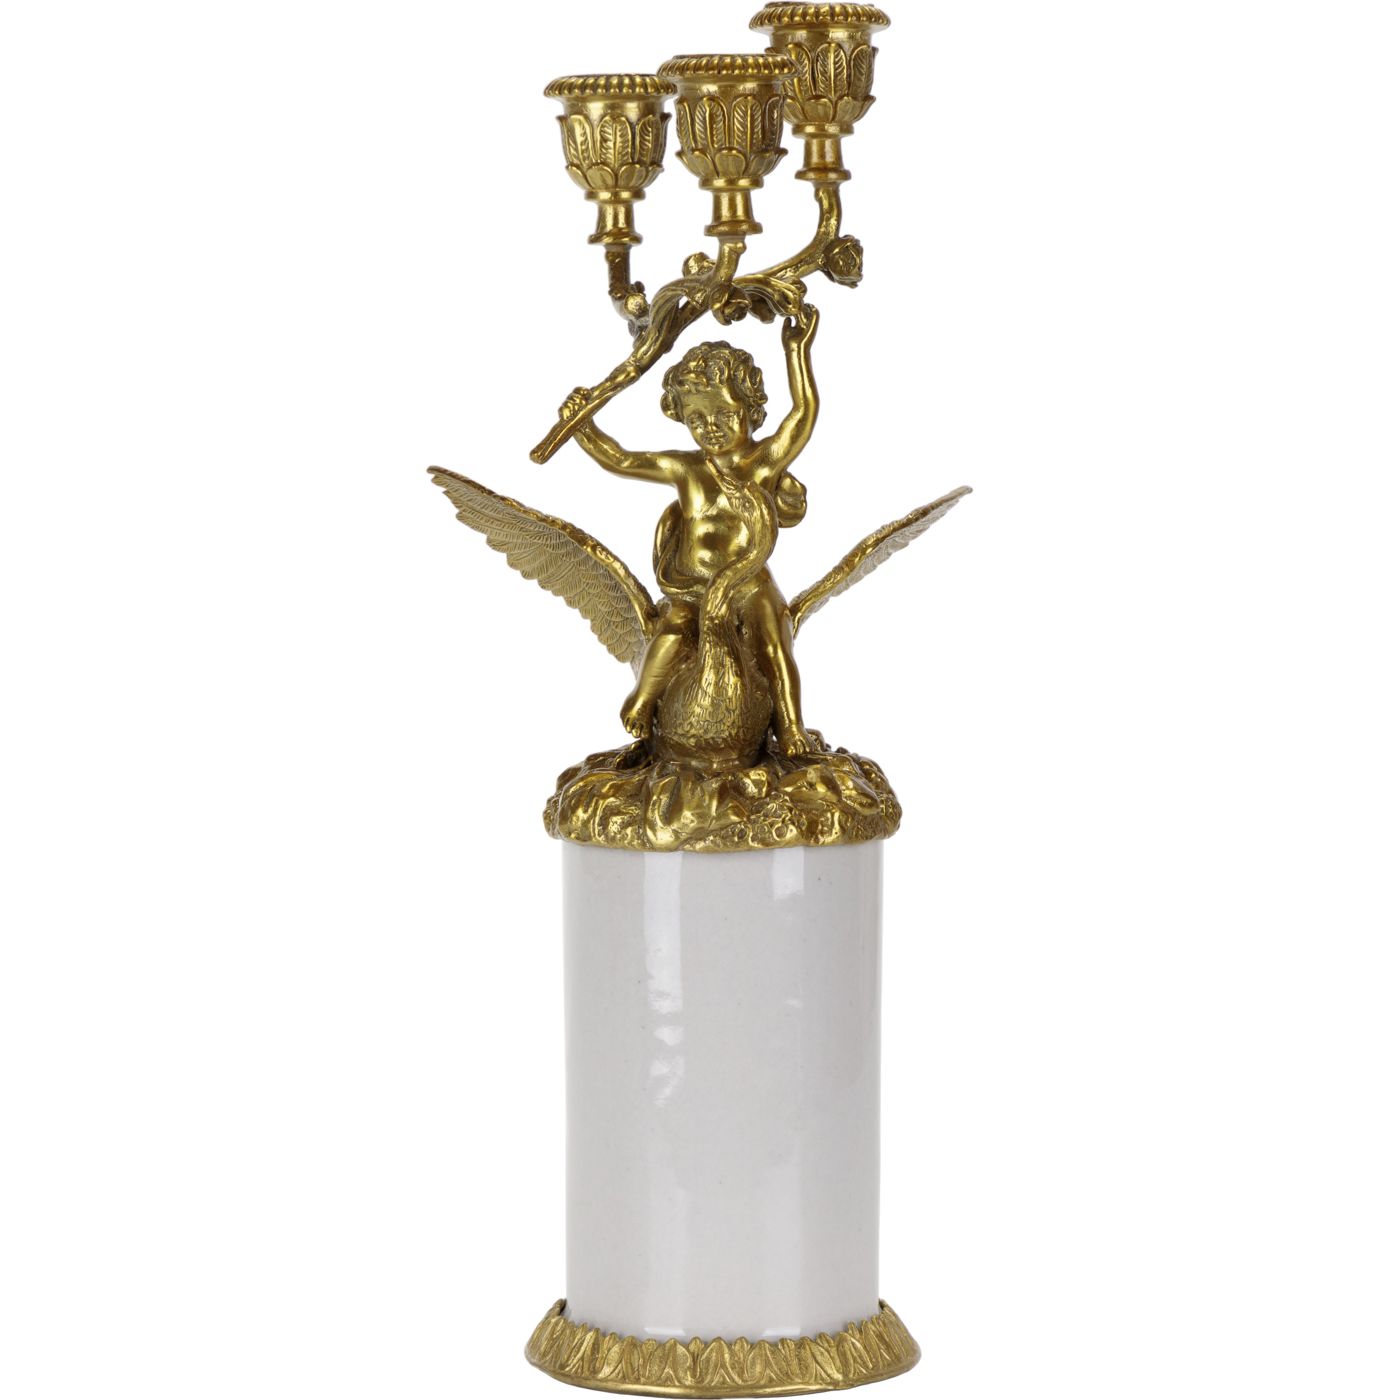 Подсвечник Glasar ангел с лебедем, белый с золотым, 12х12х31 см подсвечник с ангелом glasar синий с золотым декором 13x10x37 см